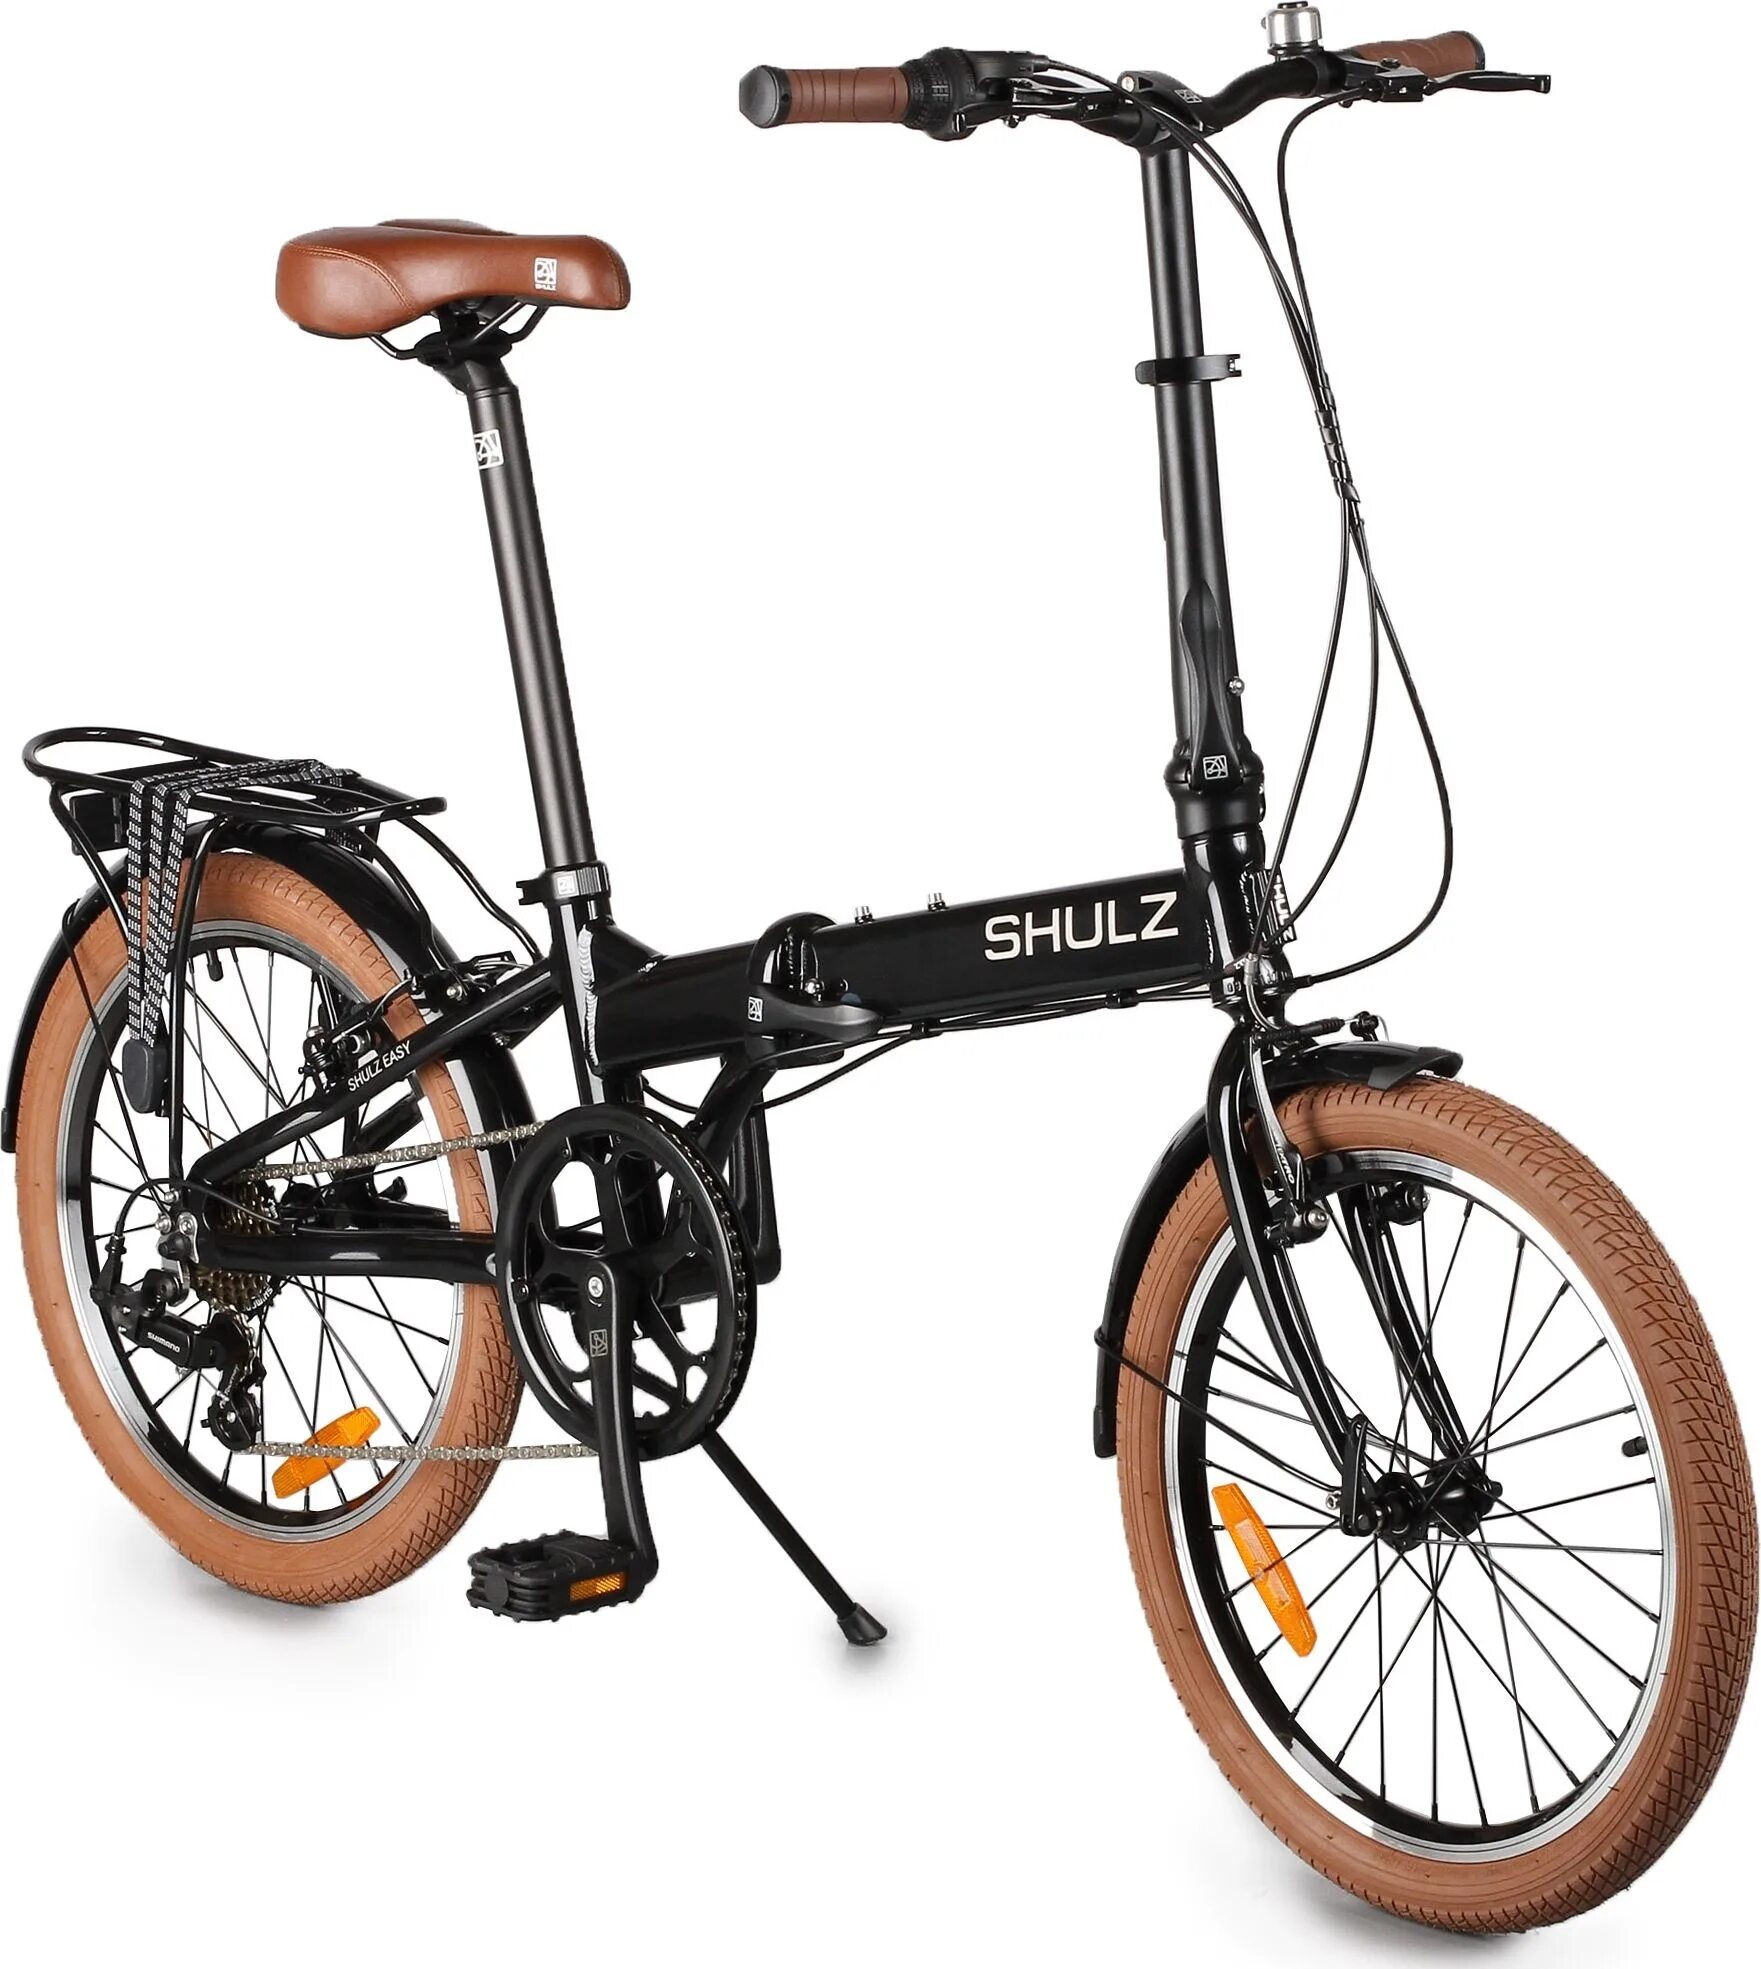 Купить велосипед складной бу. Городской велосипед Shulz easy. Складной велосипед Shulz easy. Городской велосипед Shulz Lentus. Велосипед Шульц складной алюминиевый.